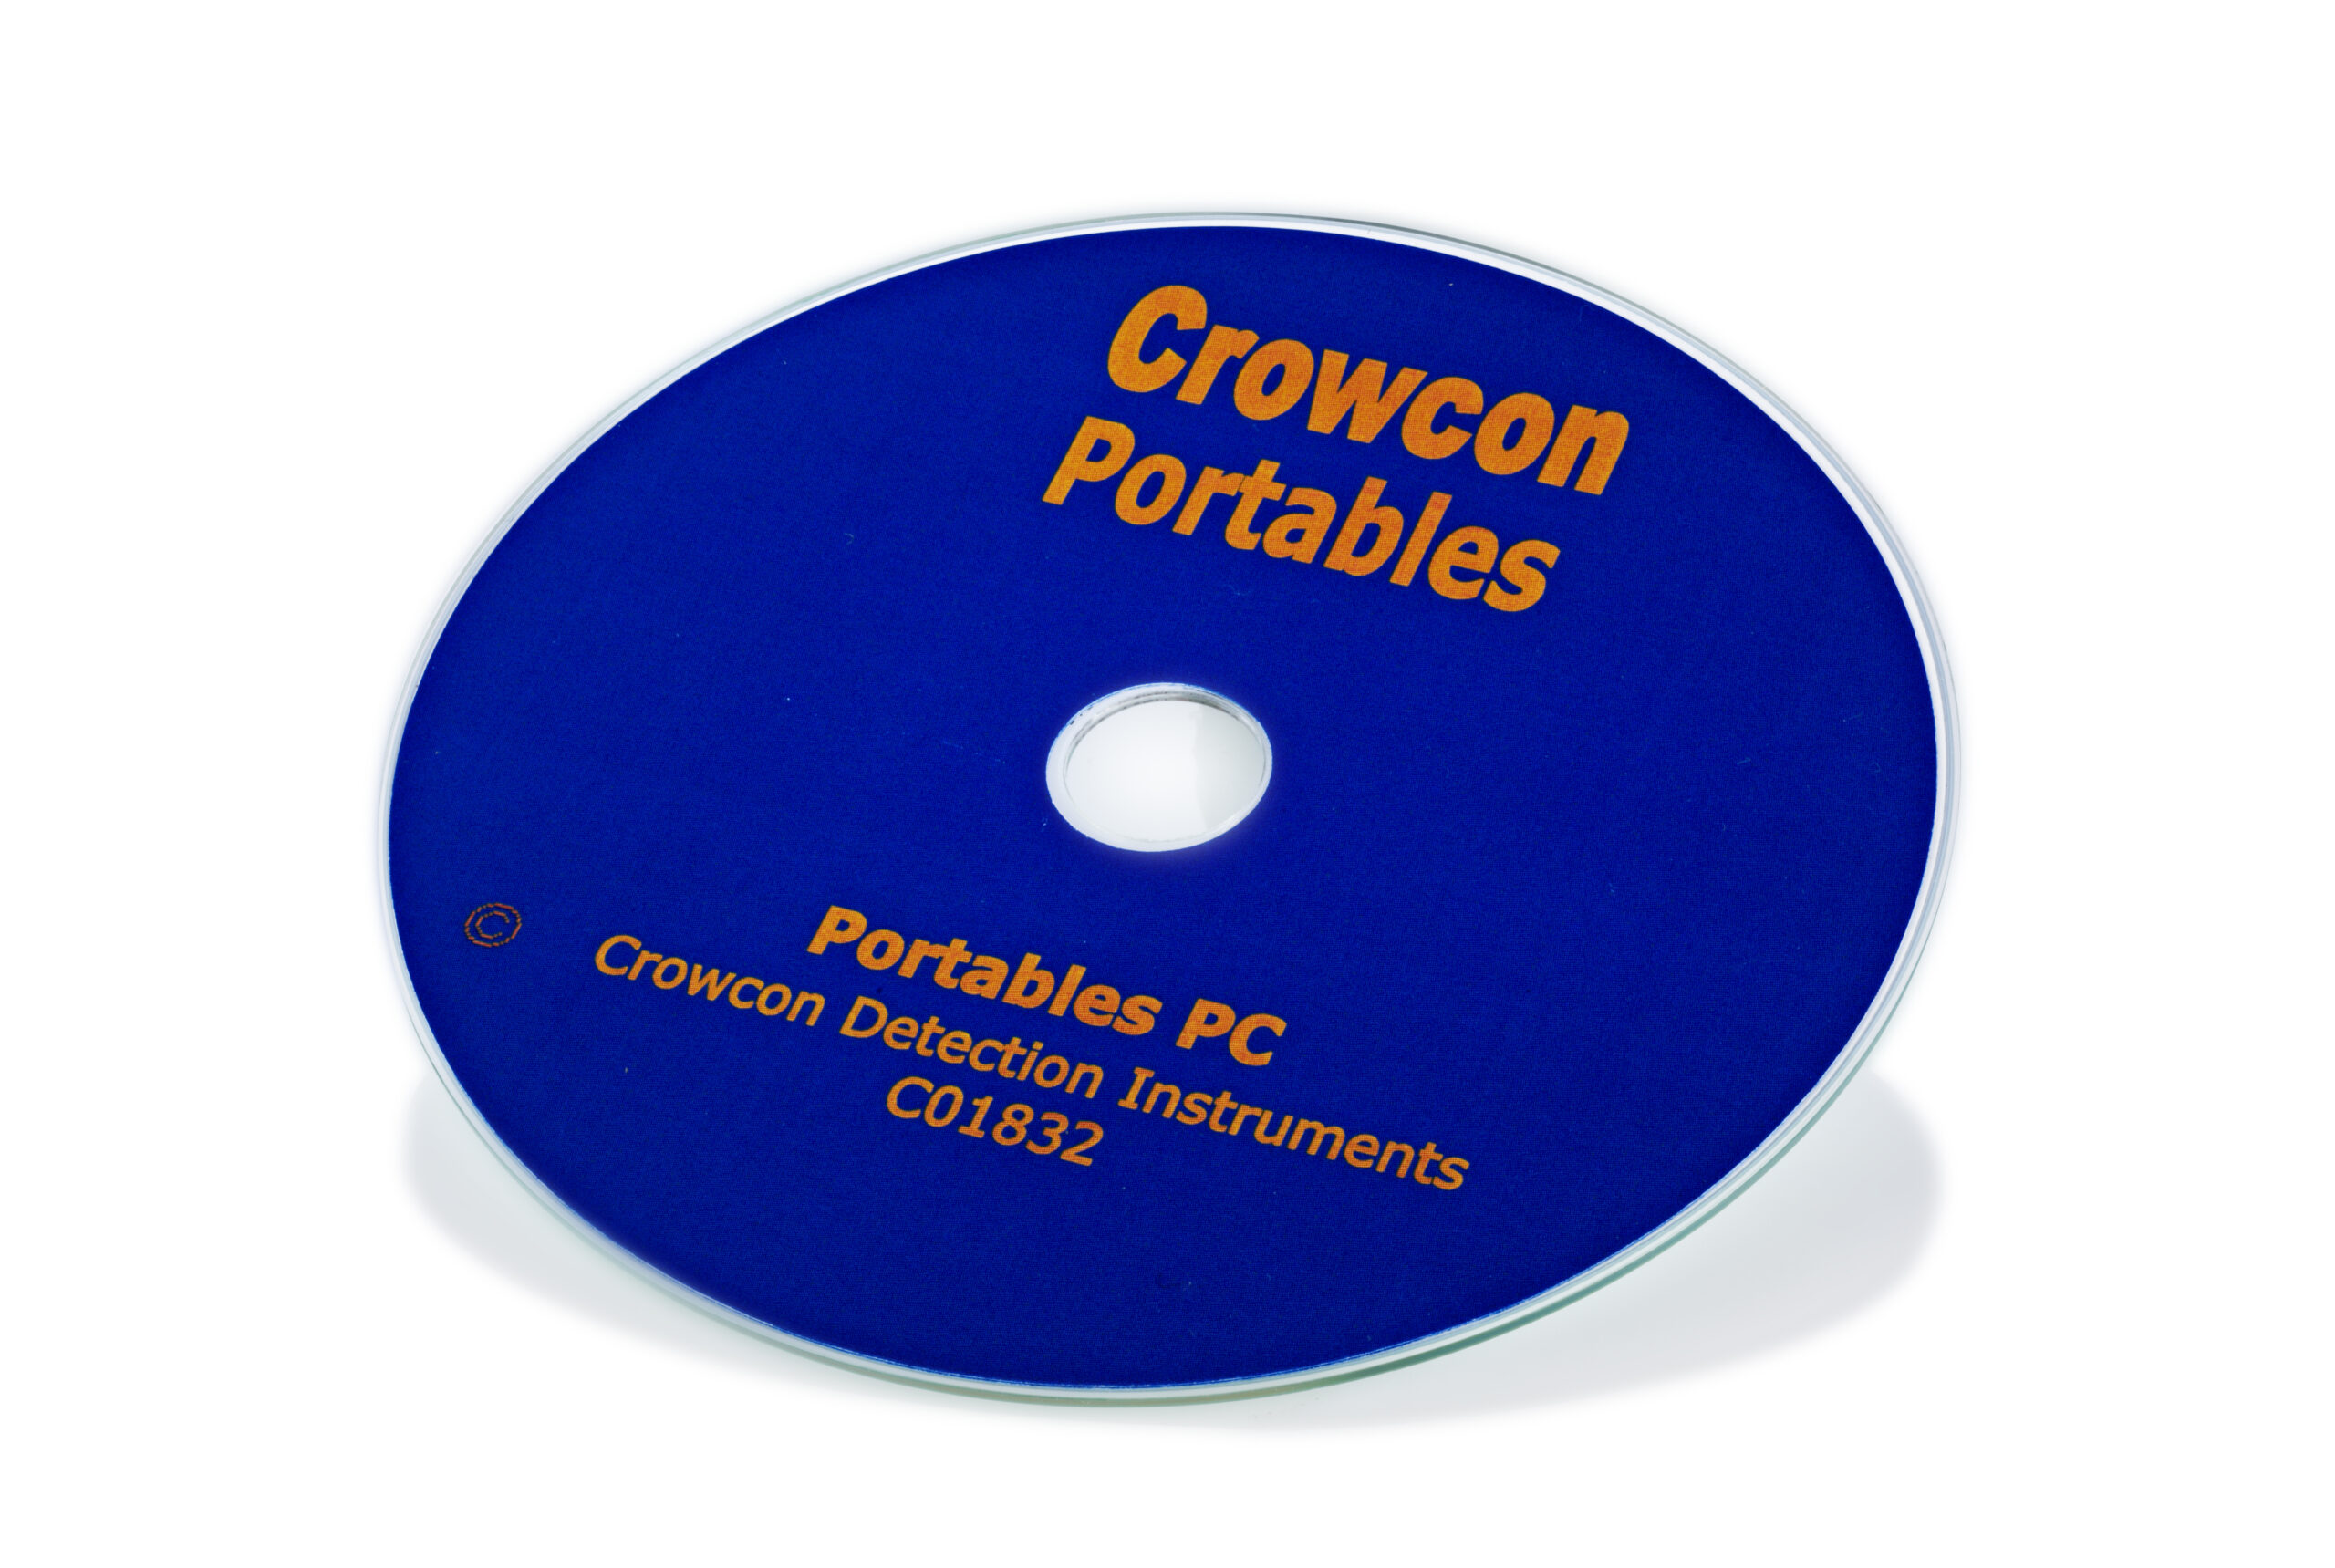 CD de software para PC portáteis